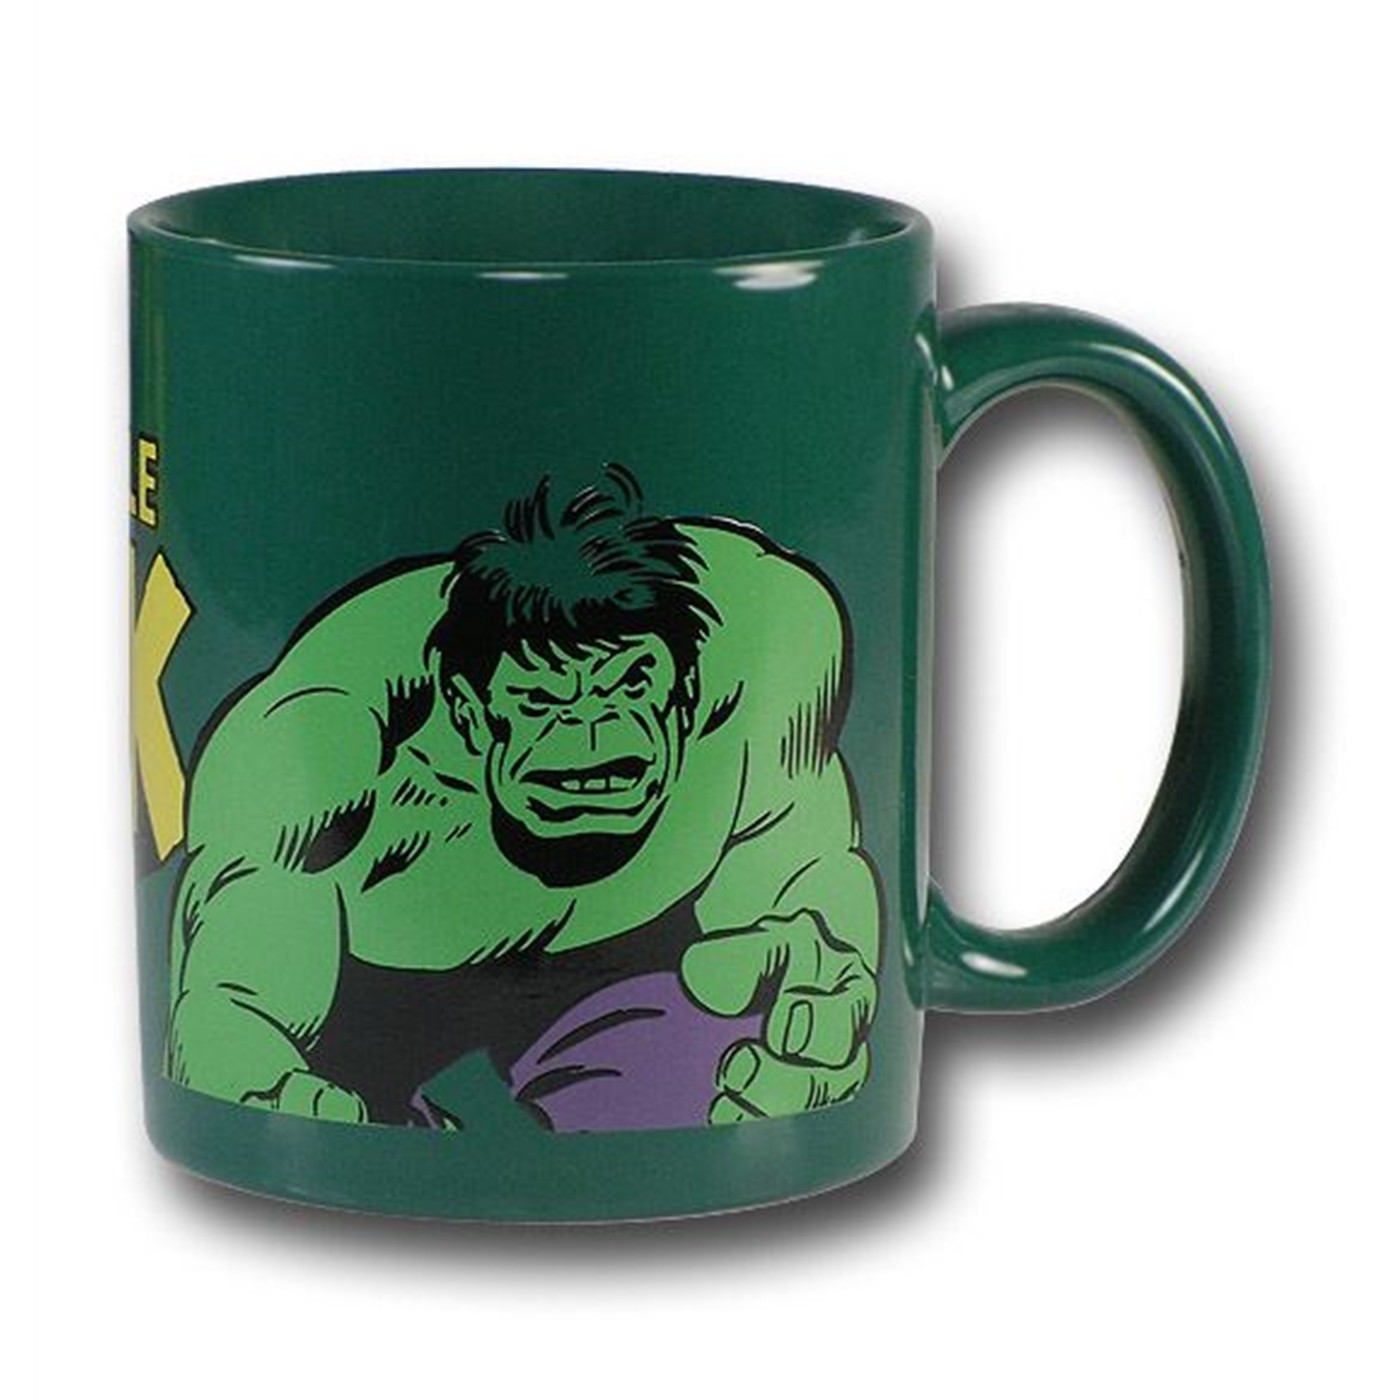 Hulk Ceramic Mug Of Incredible Green